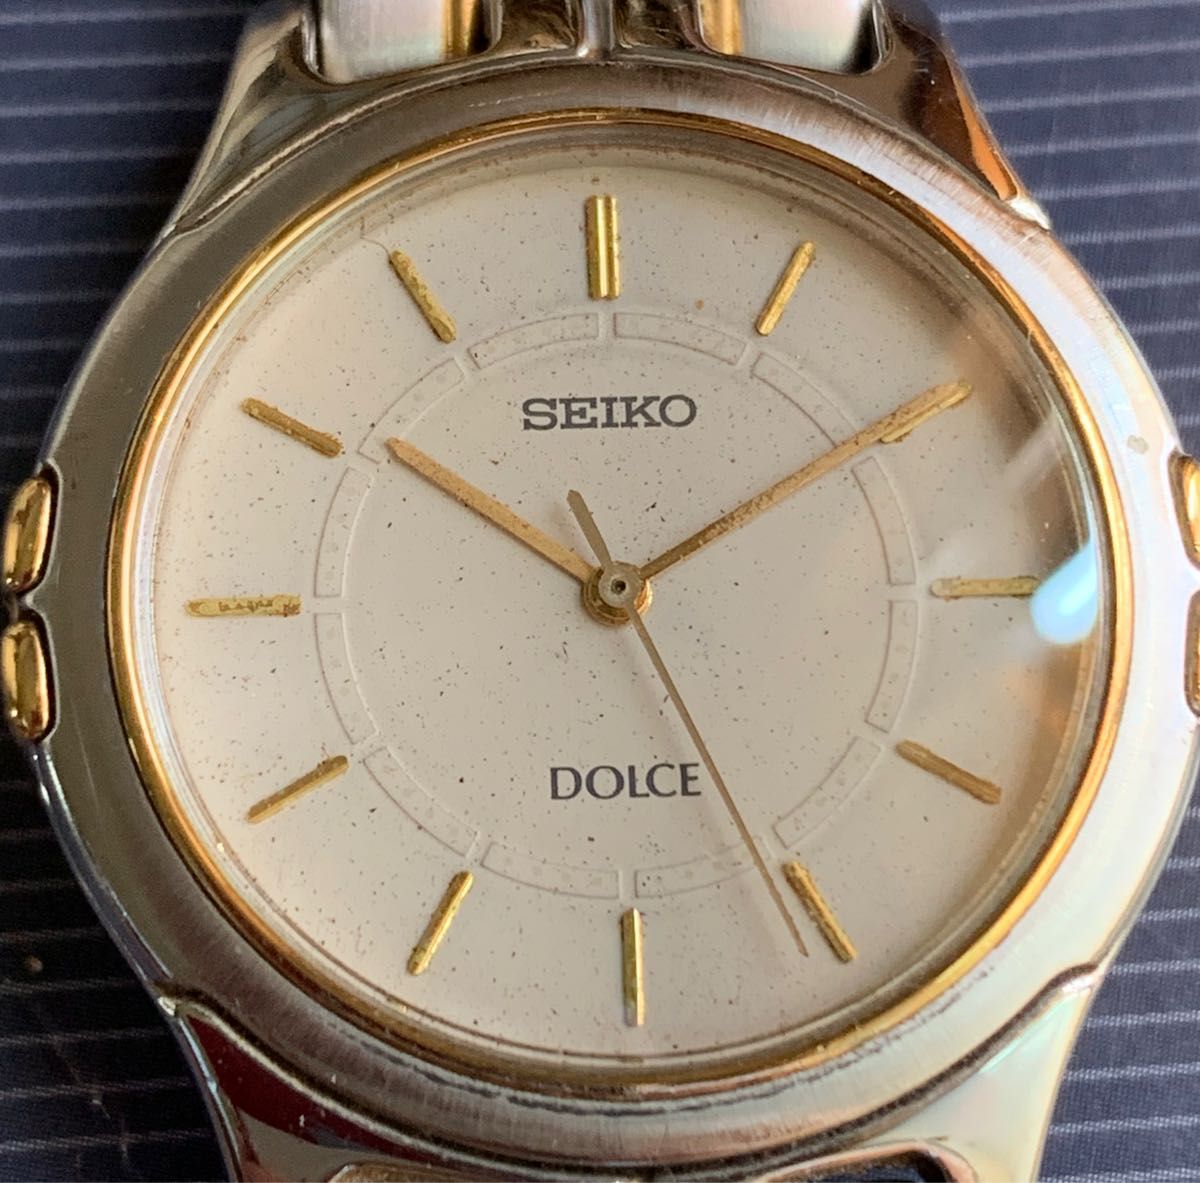 SEIKO ドルチェ  Dolce 紳士用高級腕時計カラーホワイト/シルバー/ゴールド